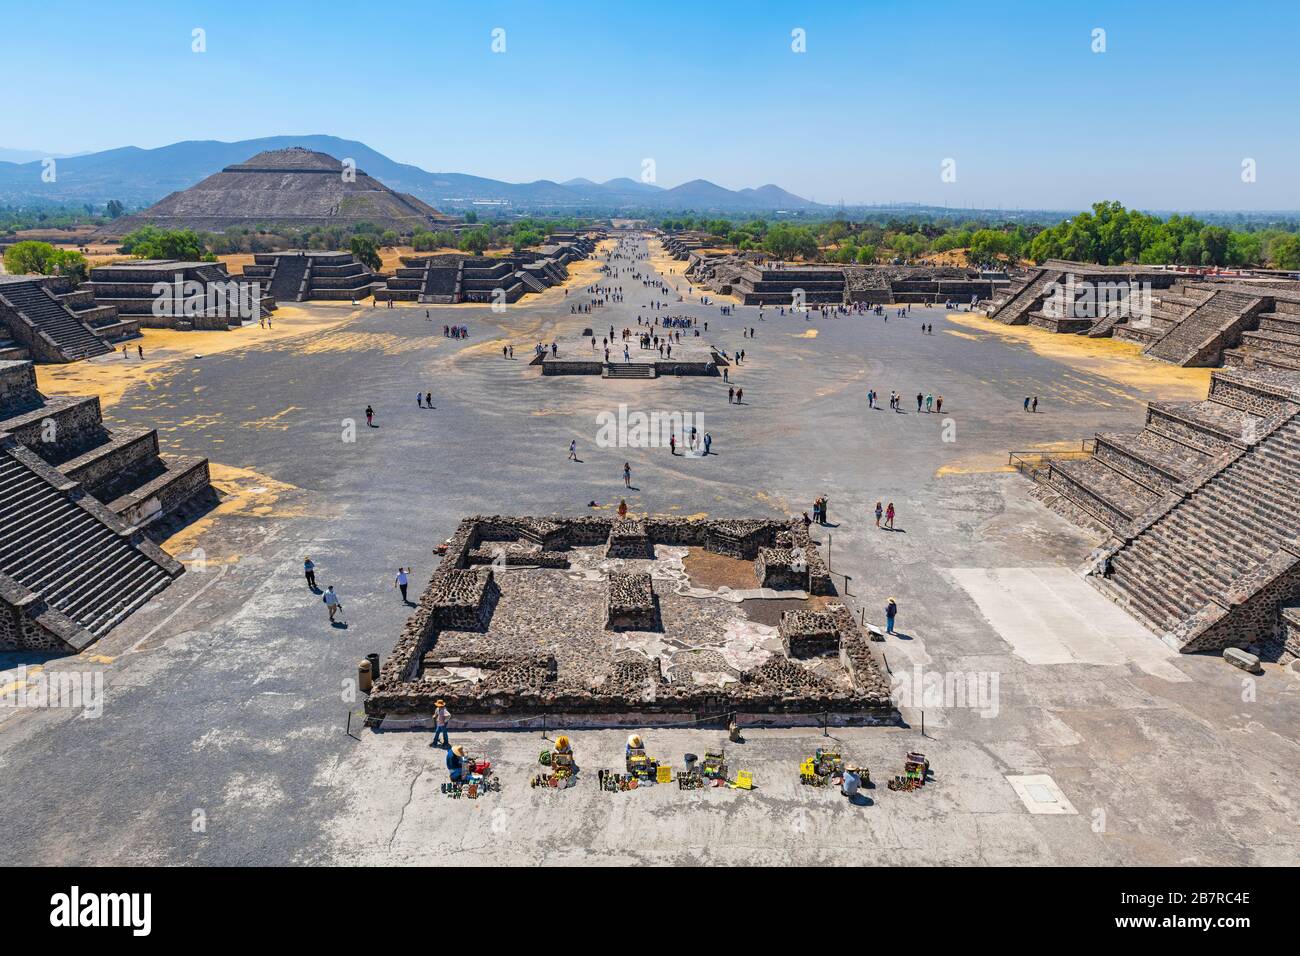 Le site archéologique de Teotihuacan vu de la pyramide de la lune avec l'Allée des morts et des Sun Pyramid et des touristes, Mexico, Mexique. Banque D'Images